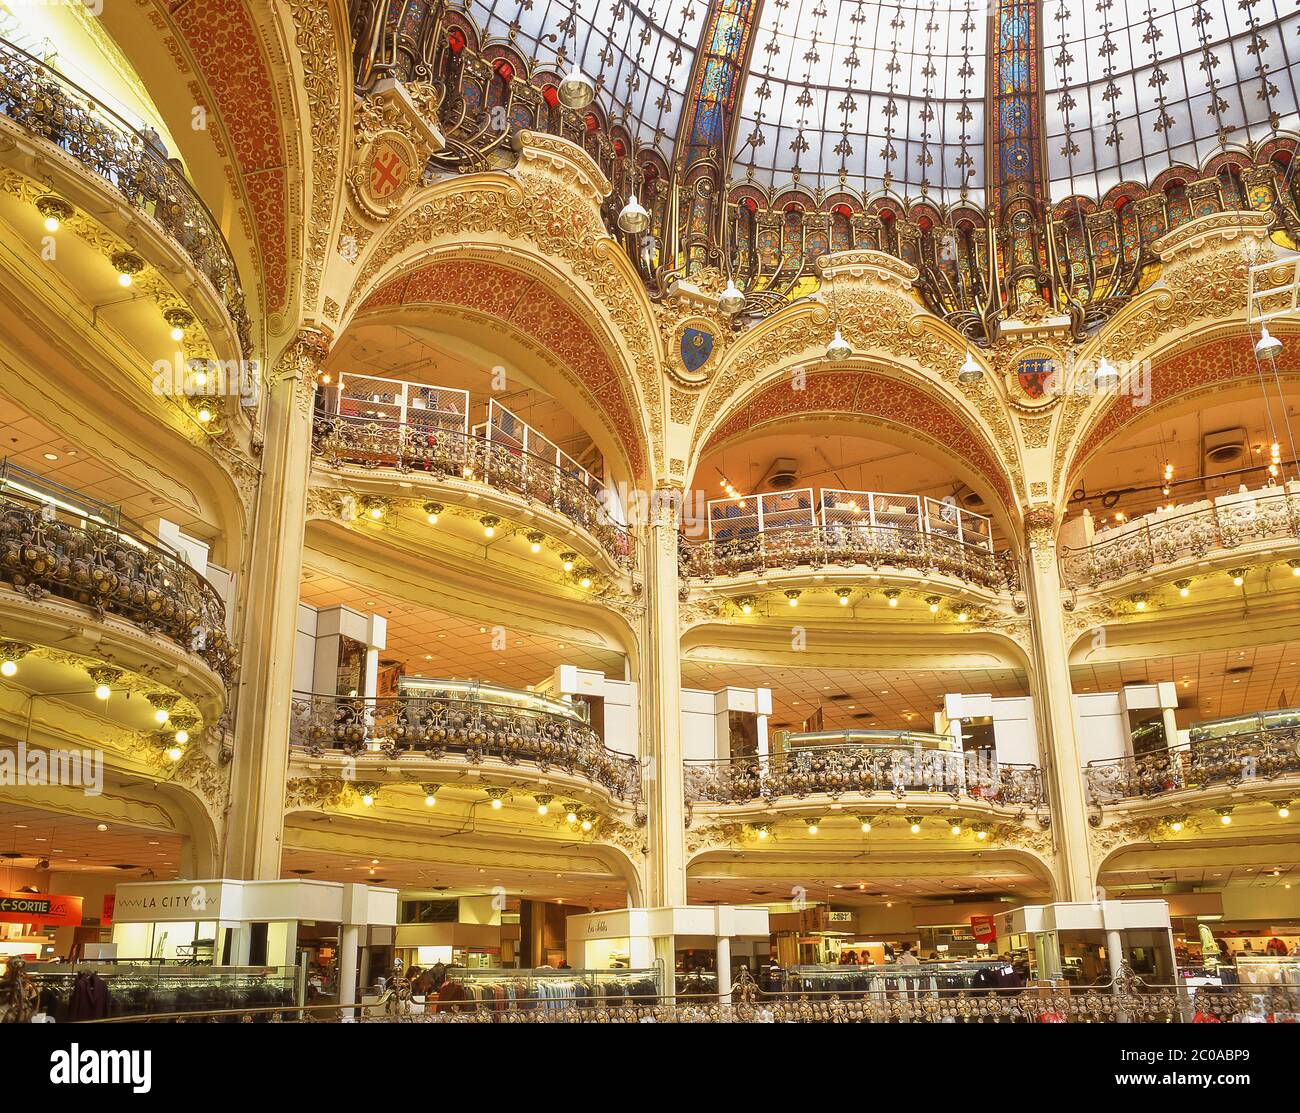 Interior dome and galleries, Galleries Lafayette department store, Boulevard Haussmann, Paris, Île-de-France, France Stock Photo